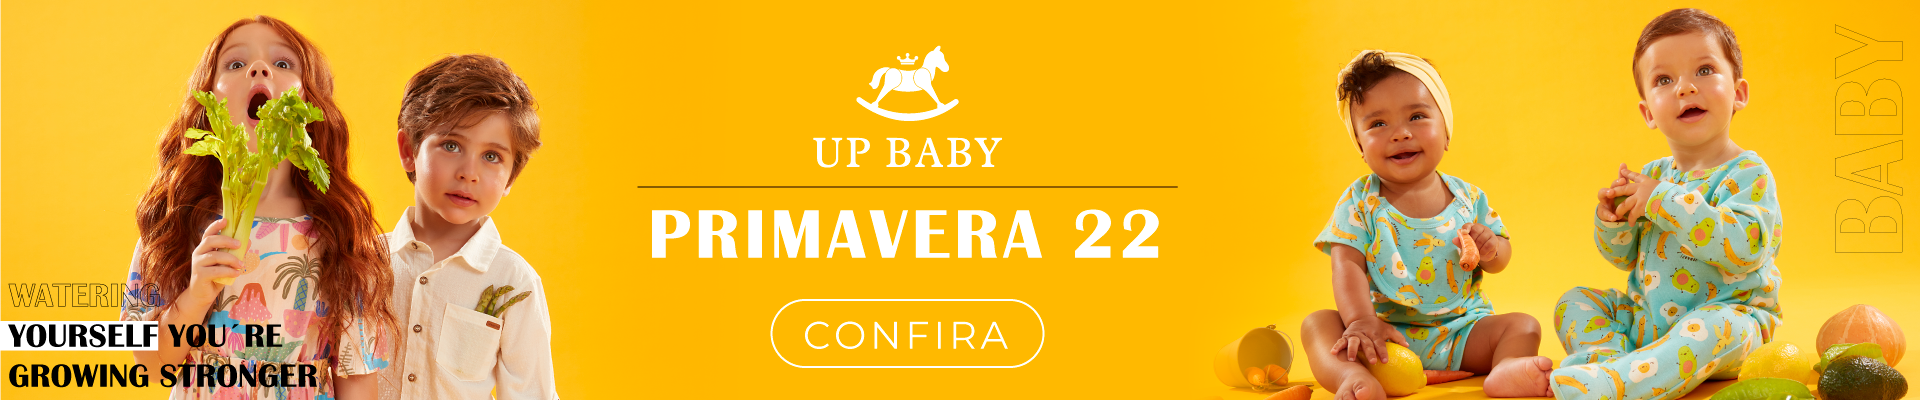 Primavera 2022 - Up Baby